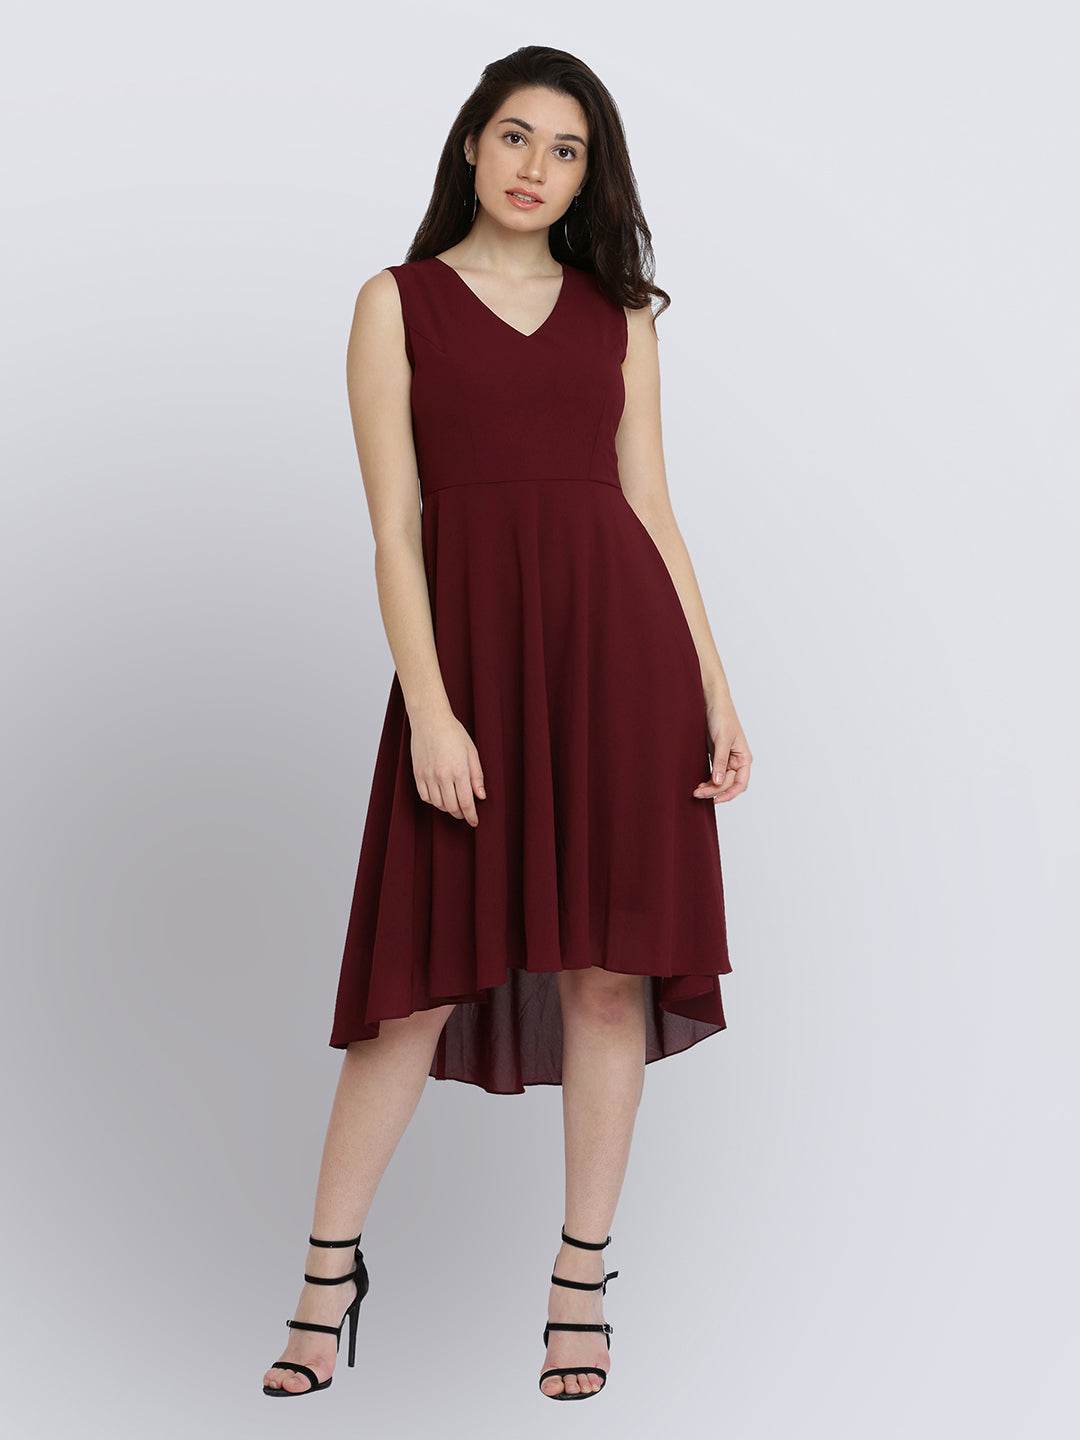 Women's Wine Red V-Neck Sleeveless Solid High-Low Midi Skater Dress